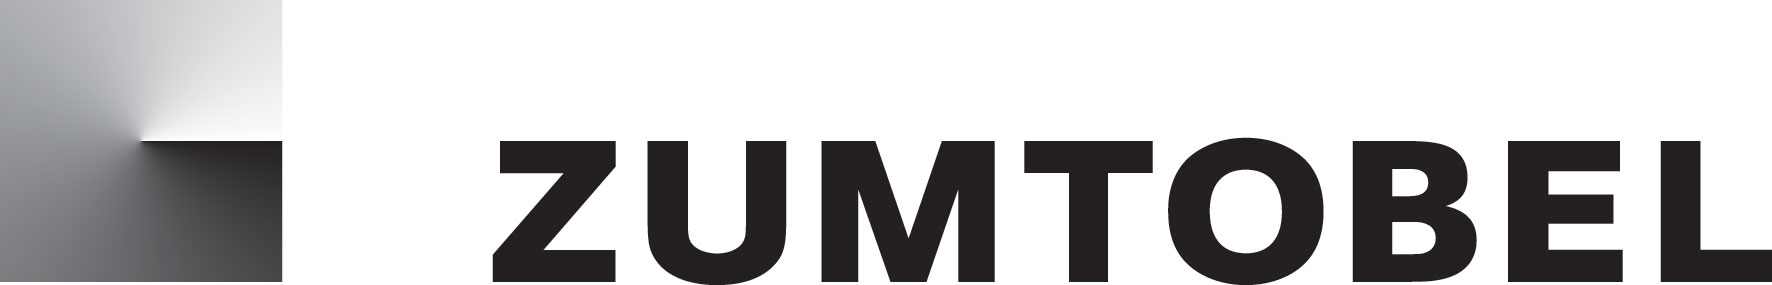 Zumtobel-Logo